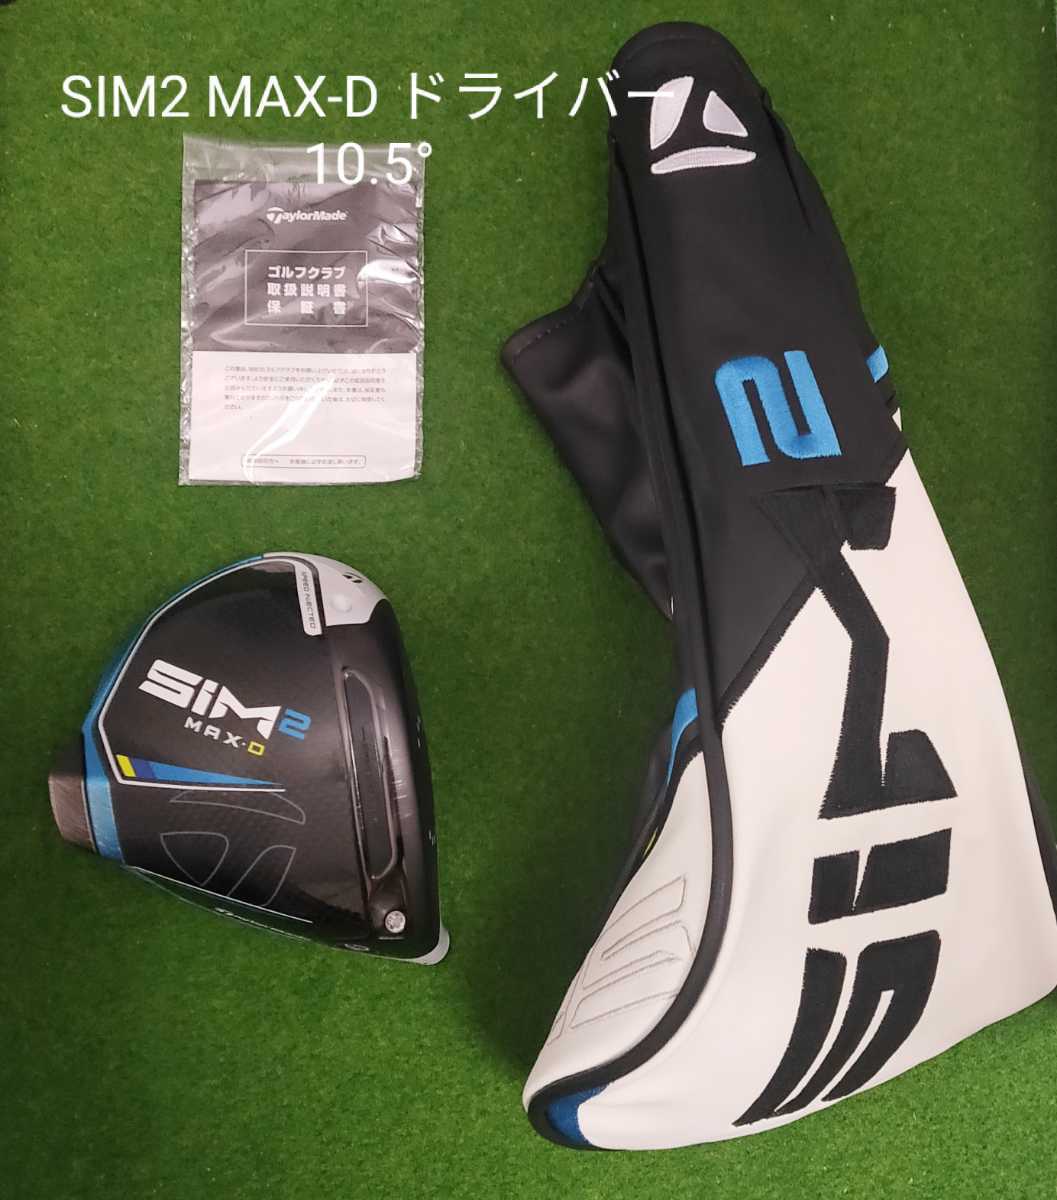 SIM2 MAX D ドライバー ヘッド単品 10.5 - クラブ